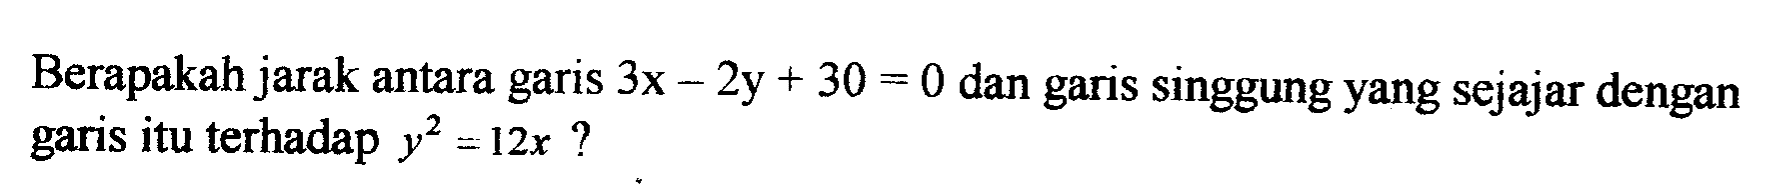 Berapakah jarak antara garis 3x-2y+30=0 dan garis singgung yang sejajar dengan garis itu terhadap y^2=12x?